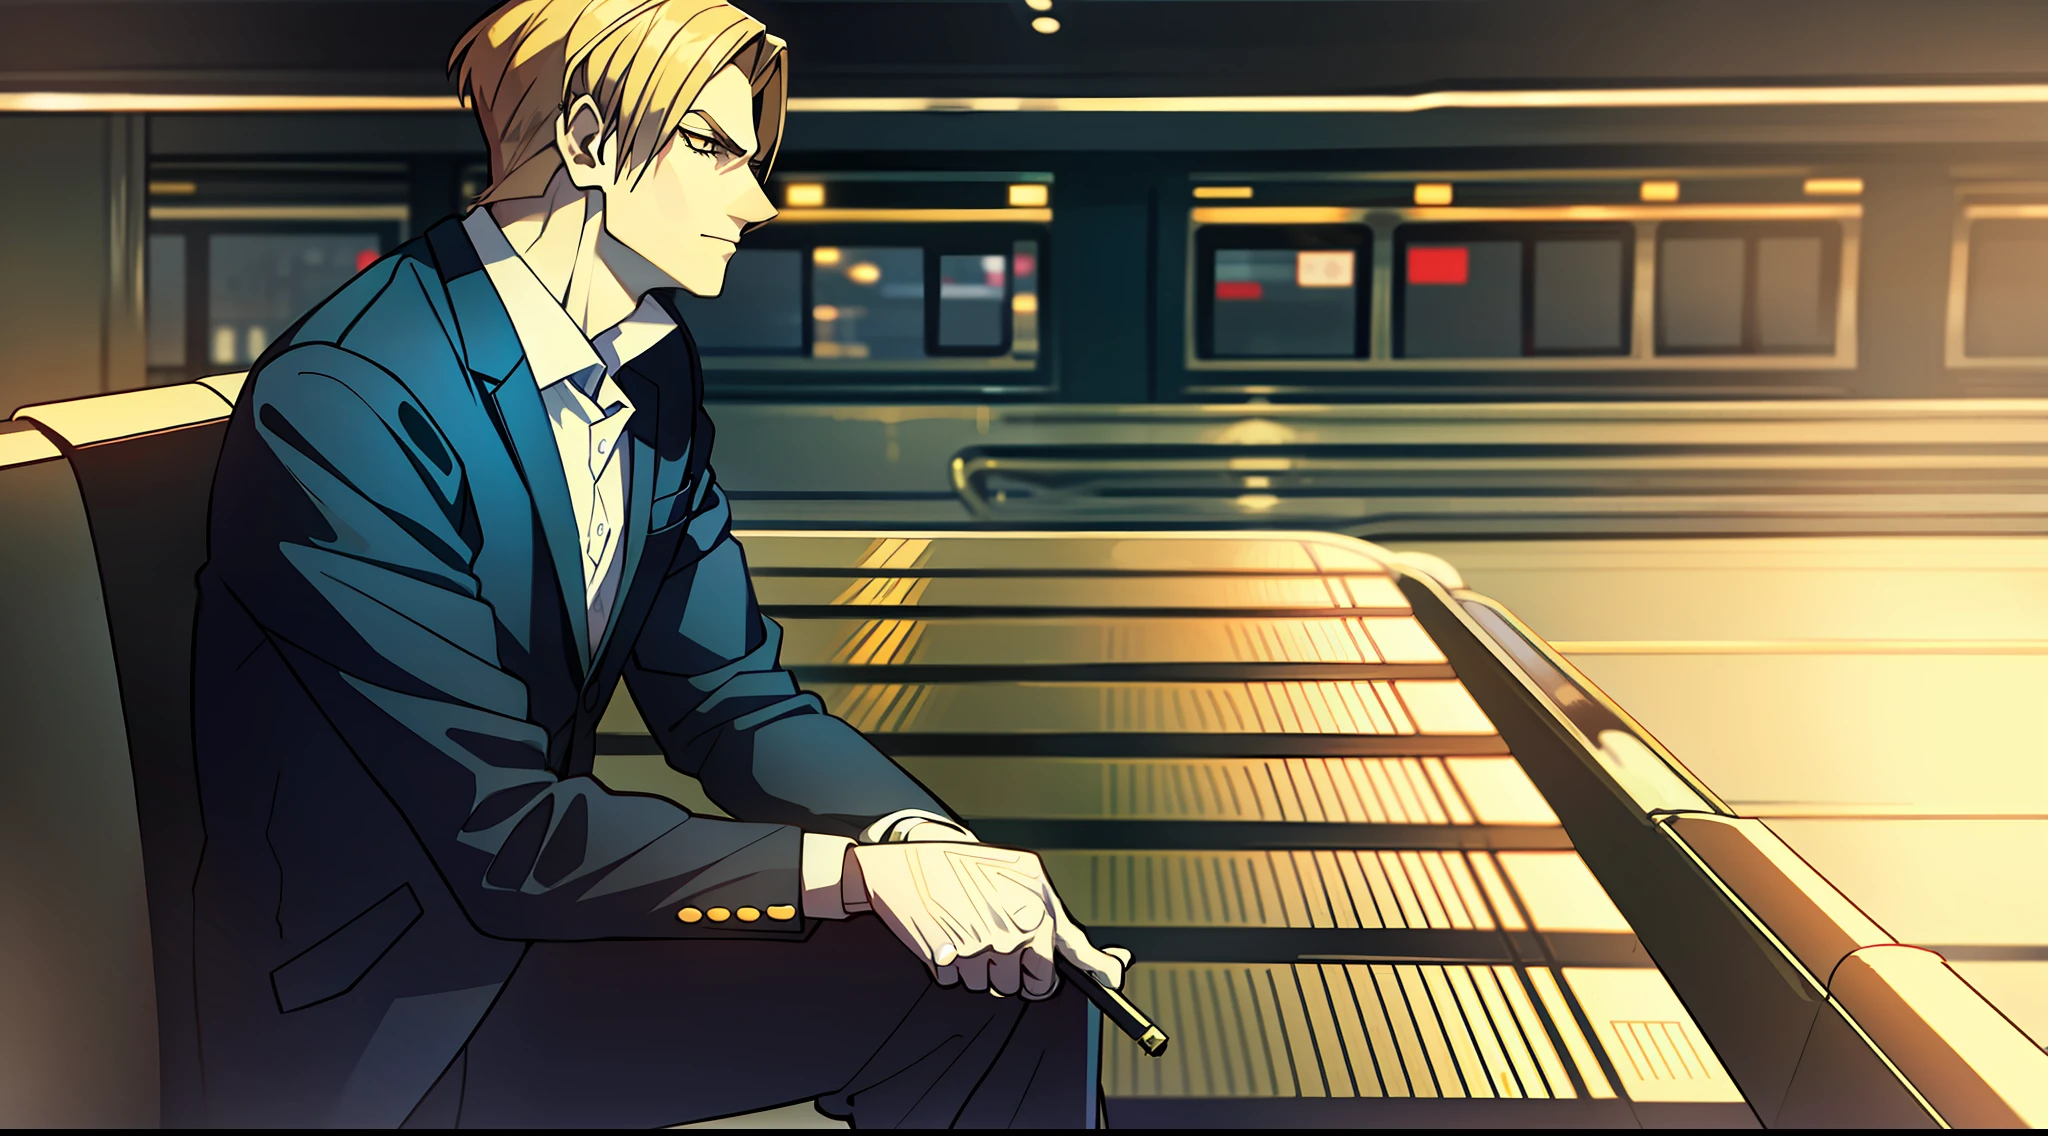 "부분, 양복을 입고 담배를 피우다, 책상다리를 하고 앉아 있는 것, 기차역 흑백 배경의 잘생긴 얼굴."